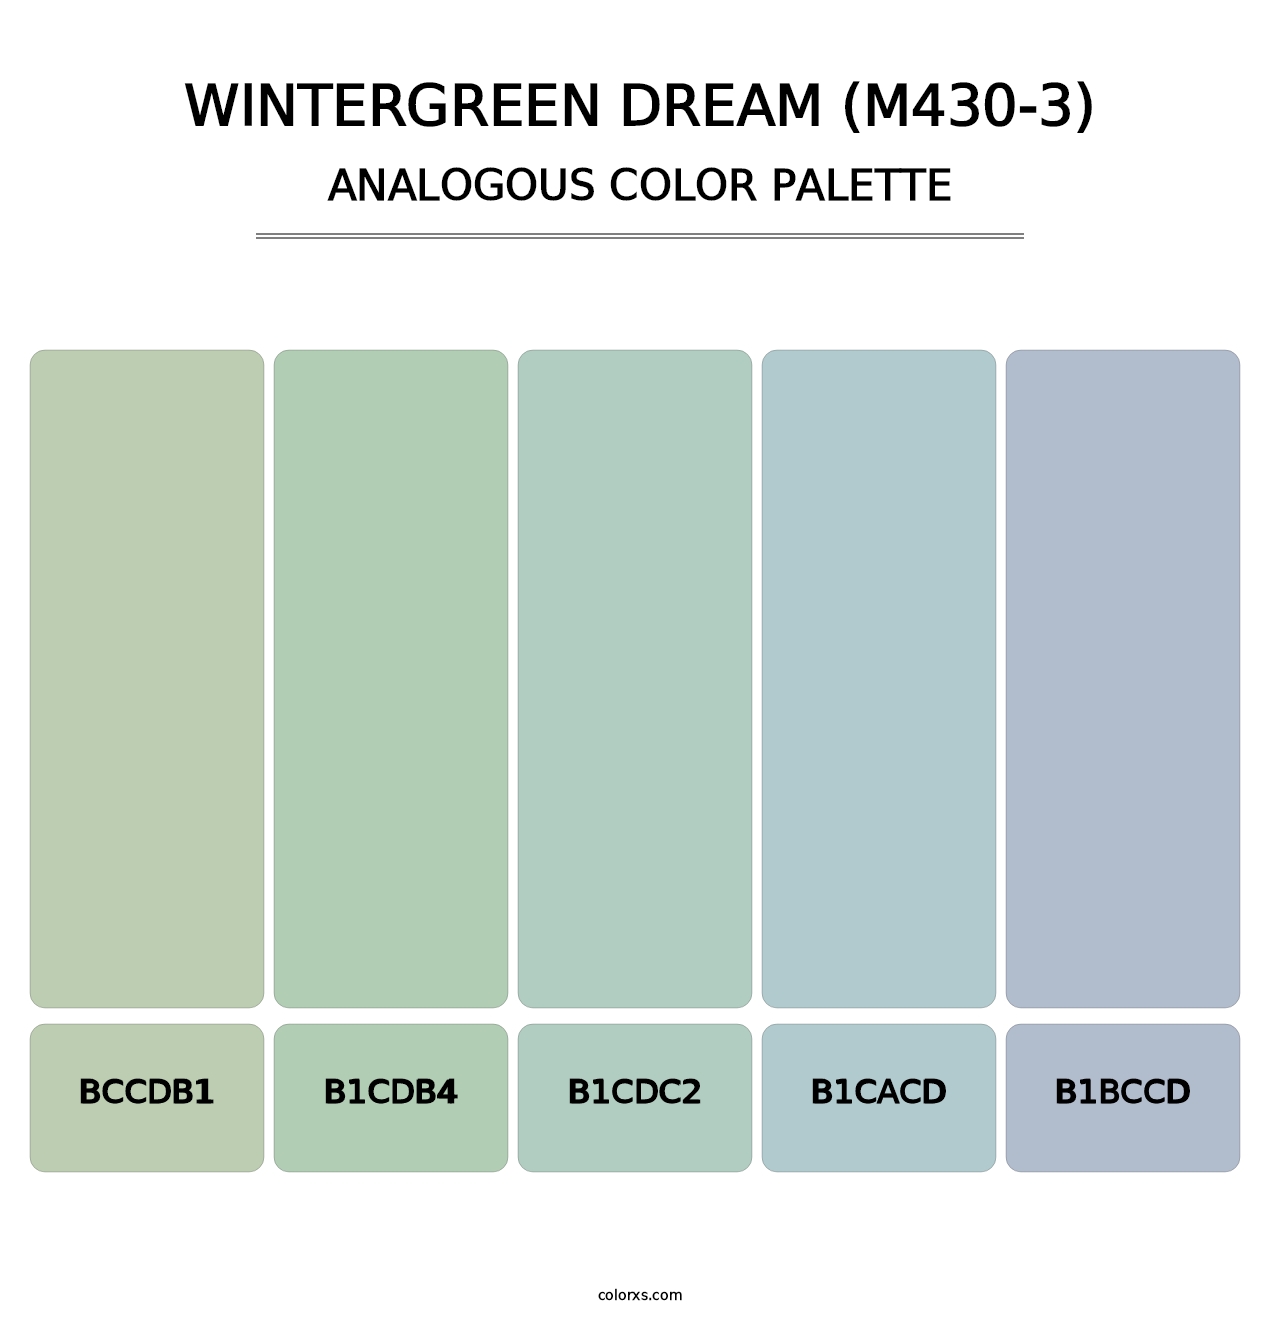 Wintergreen Dream (M430-3) - Analogous Color Palette